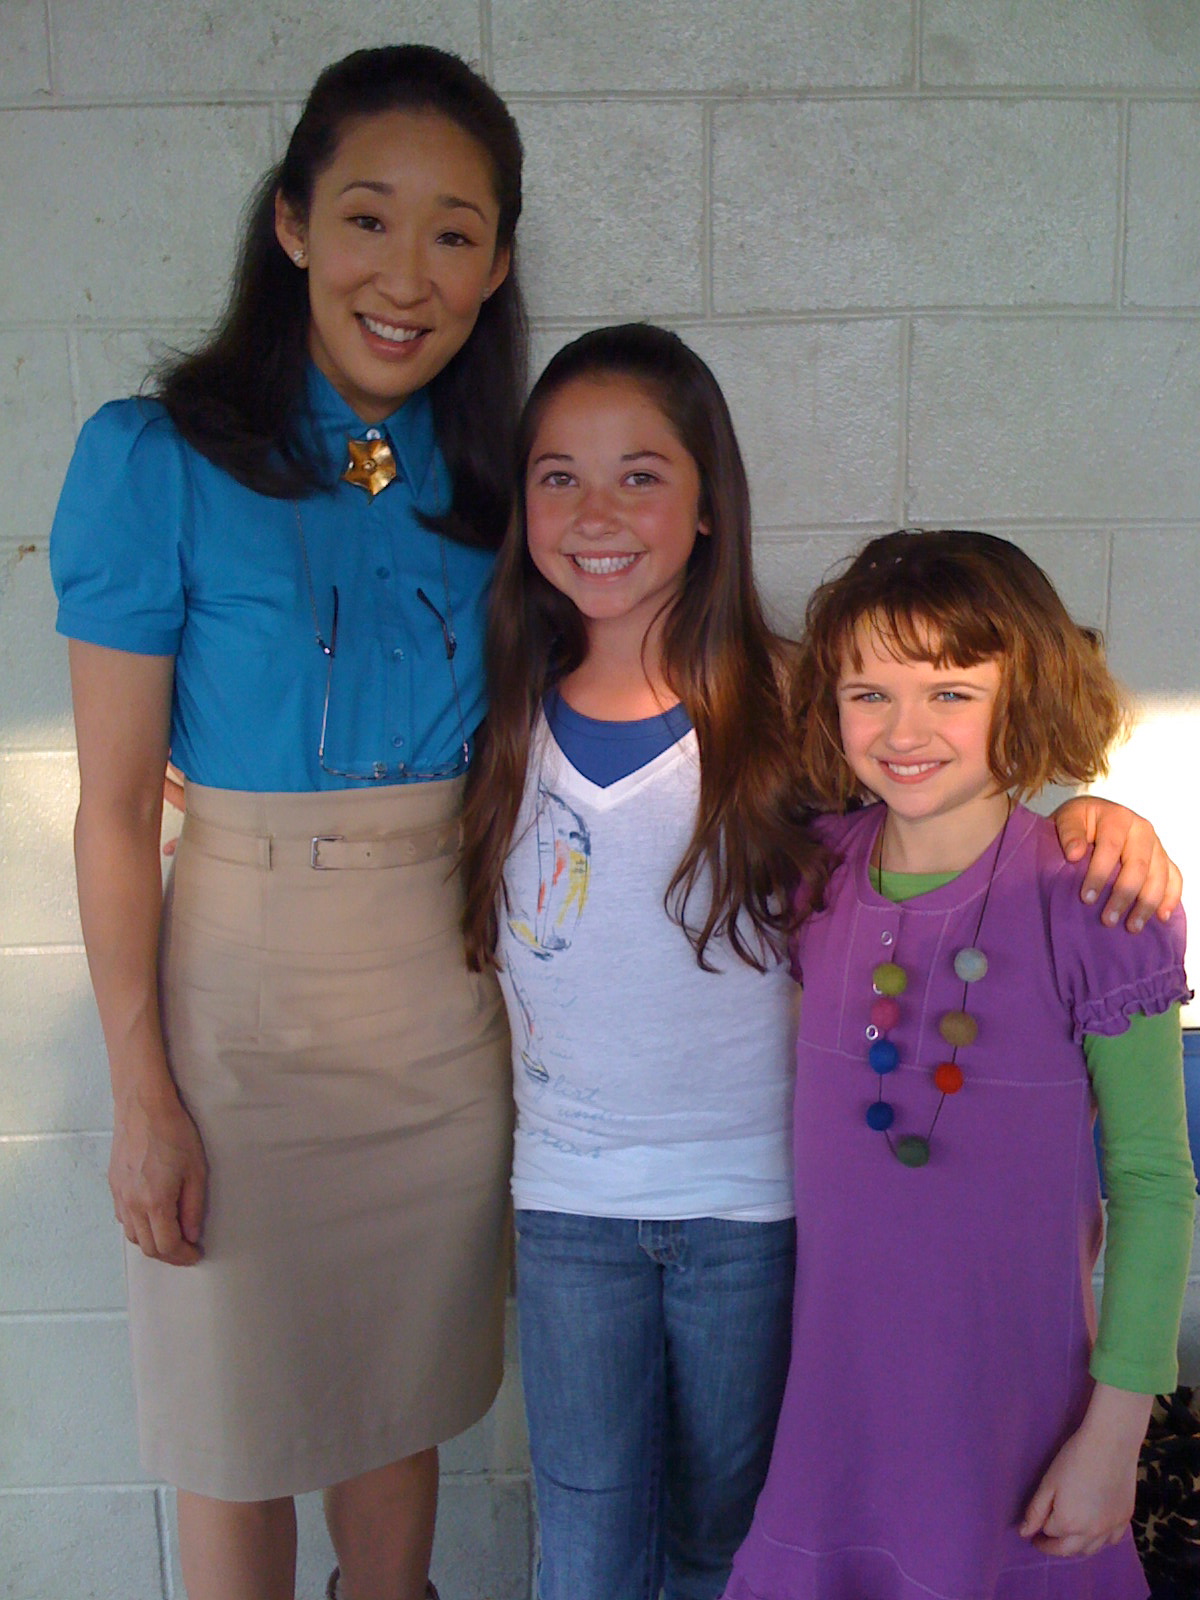 Chelsea Smith, Sandra Oh, & Joey King (Ramona) on set of Ramona and Beezus. 2009